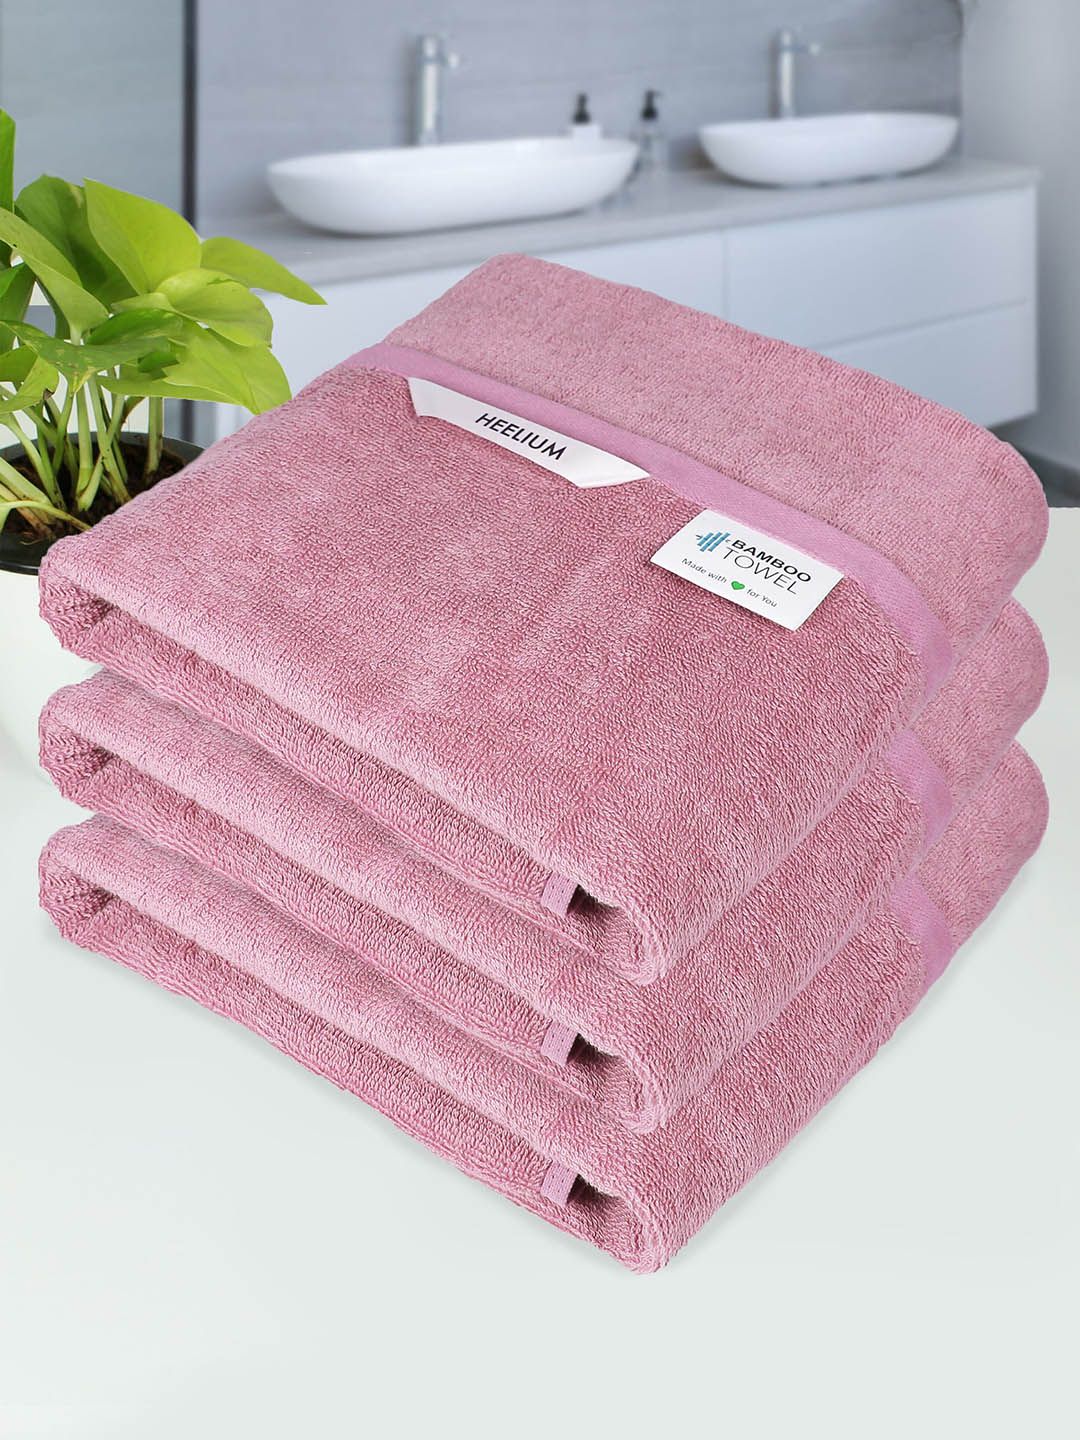 Heelium Unisex Peach Bath Towels Price in India